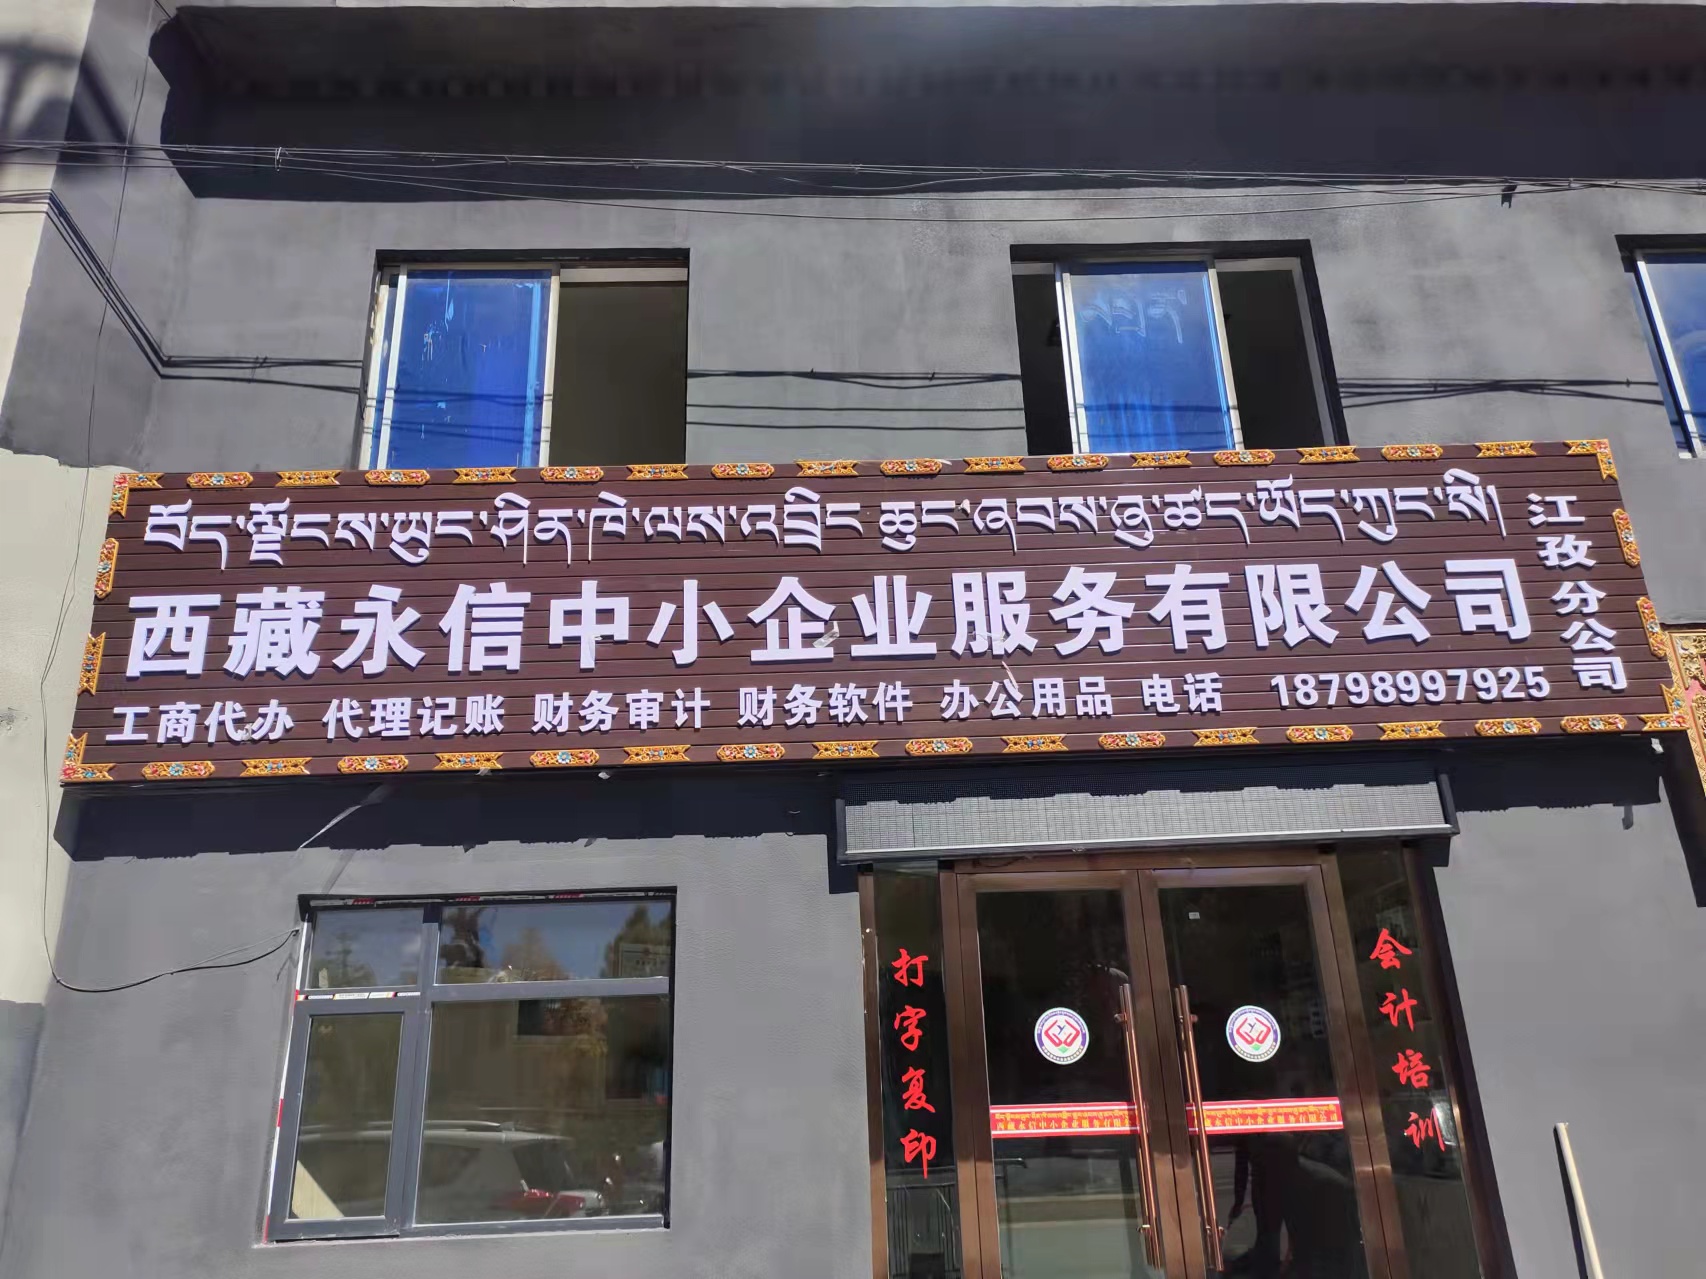 西藏永信中小企业服务有限公司↓江孜分公司10月12日正式开业啦